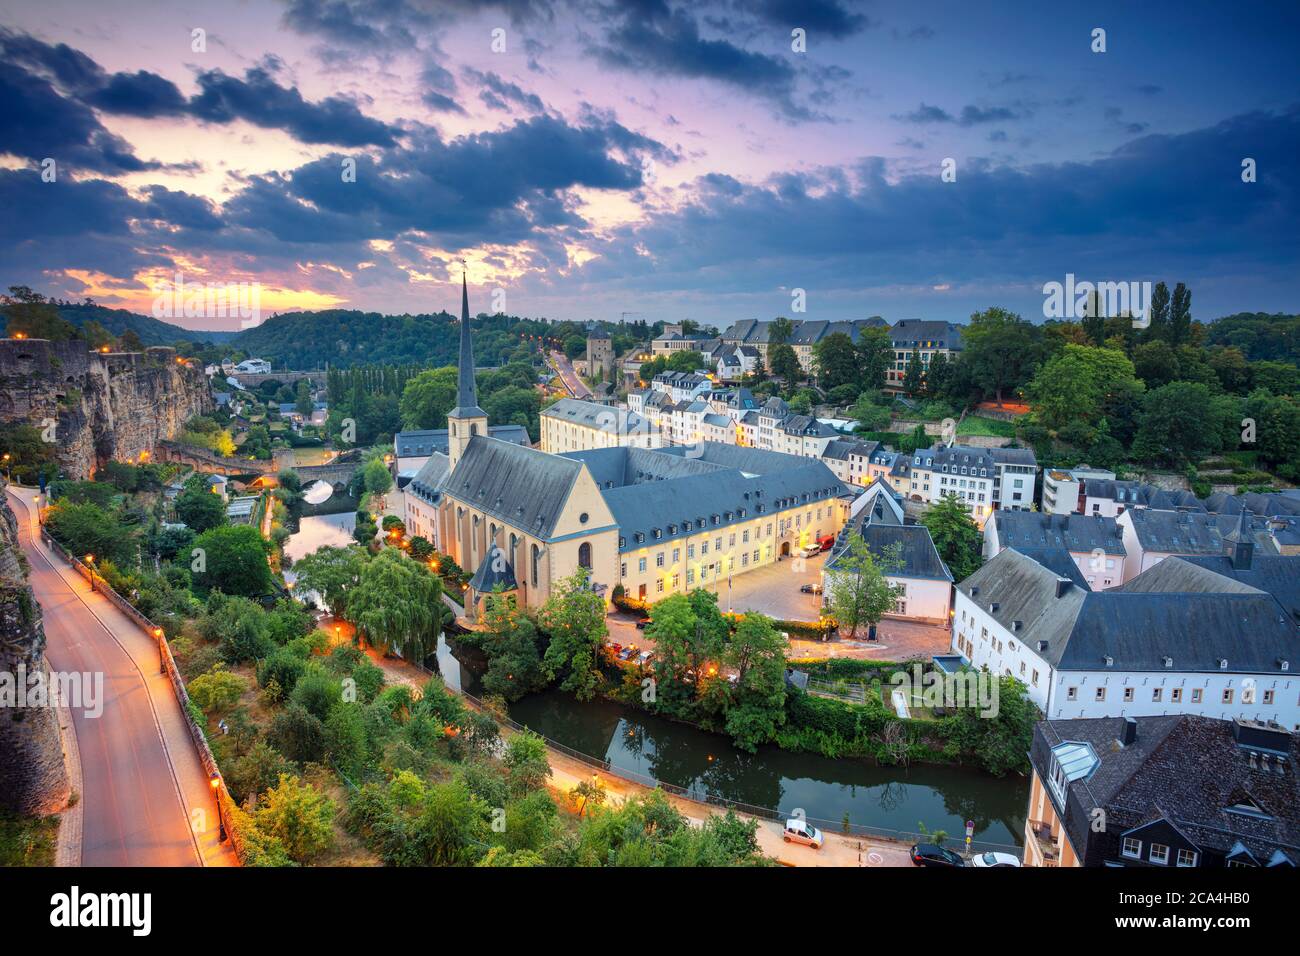 Luxemburg-Stadt. Luftbild Stadtbild der Altstadt von Luxemburg während des schönen Sommersonnenaufgangs. Stockfoto